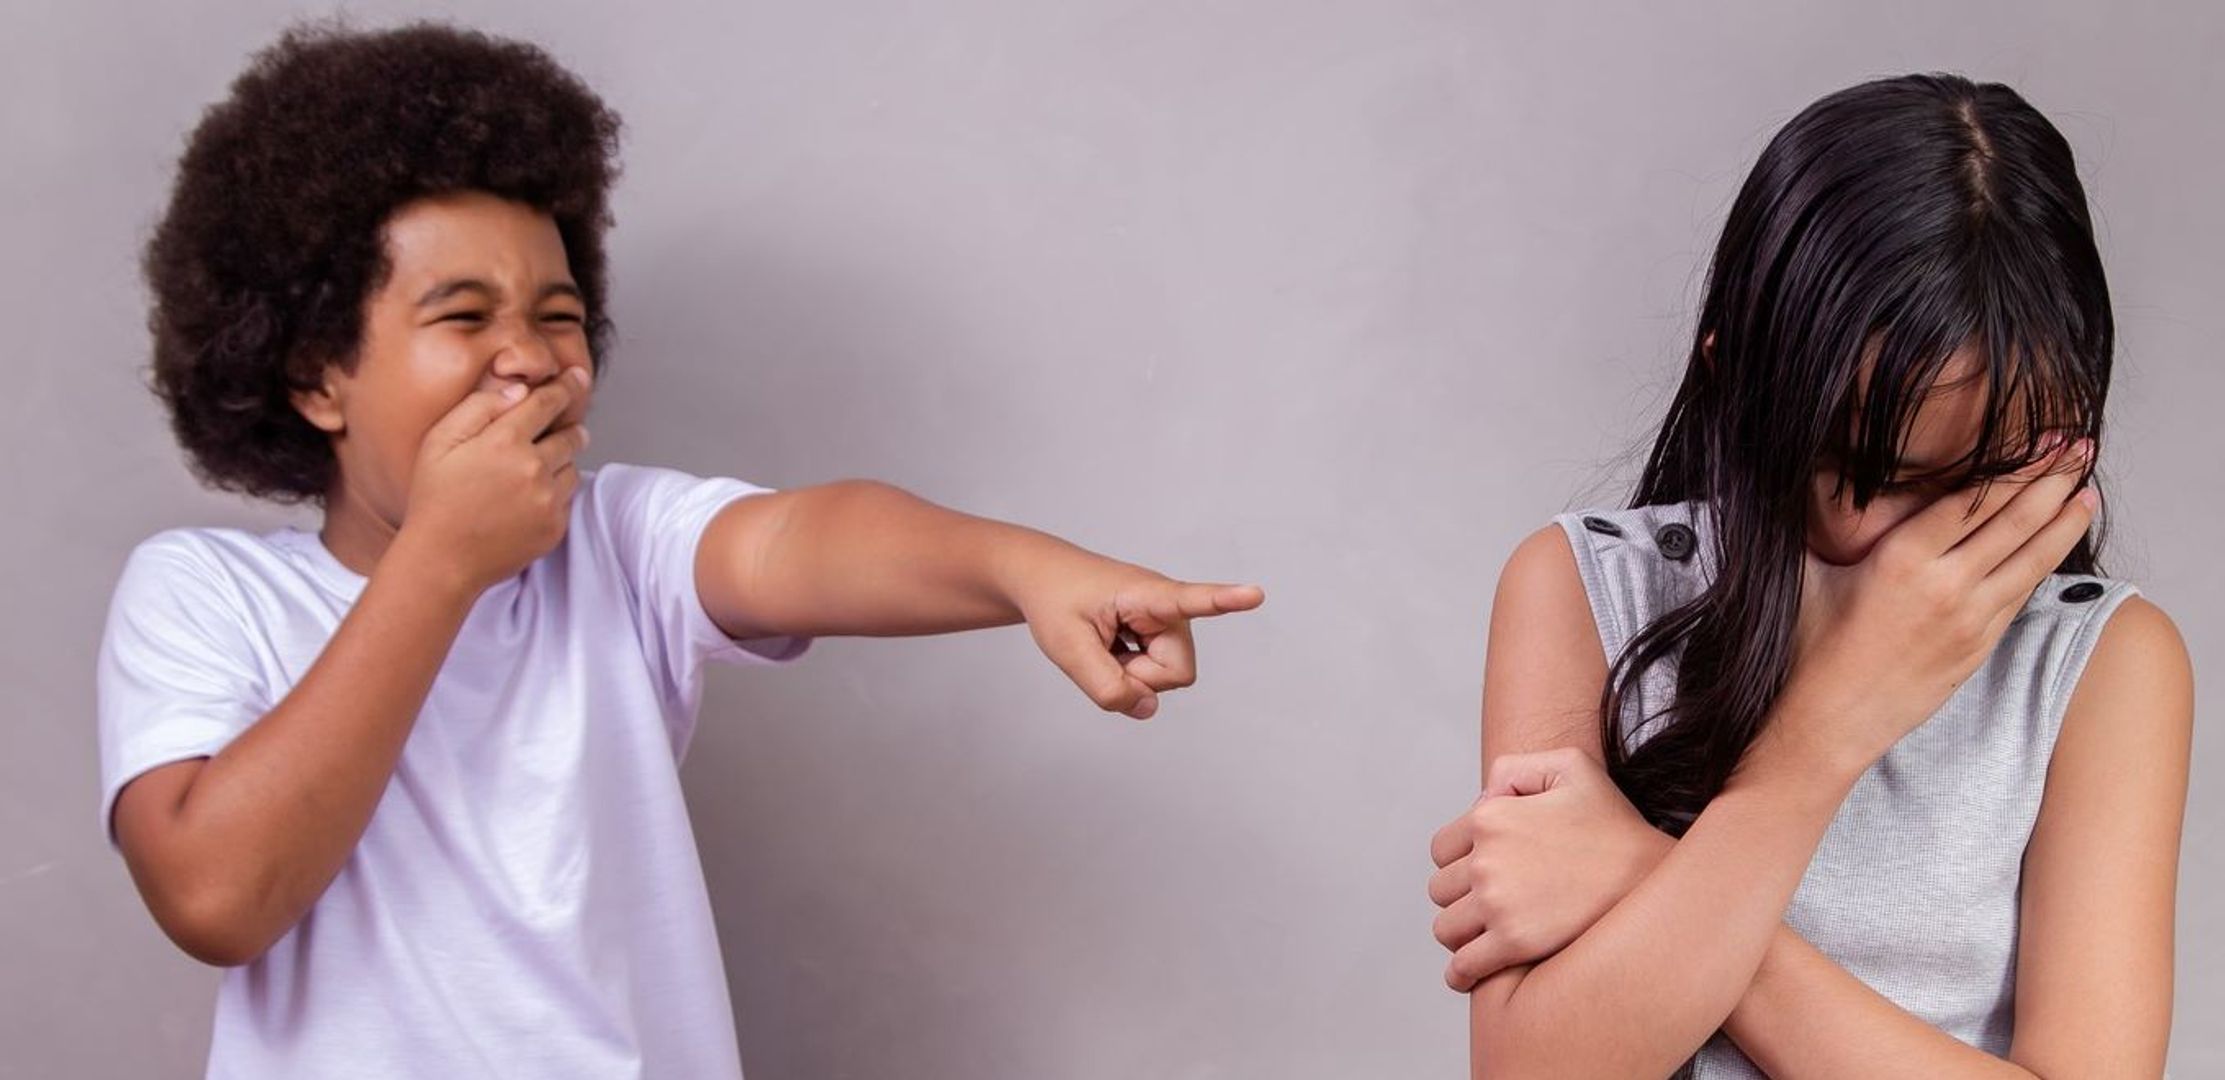 Dicas para ensinar seu filho a lidar com ofensas e agressões